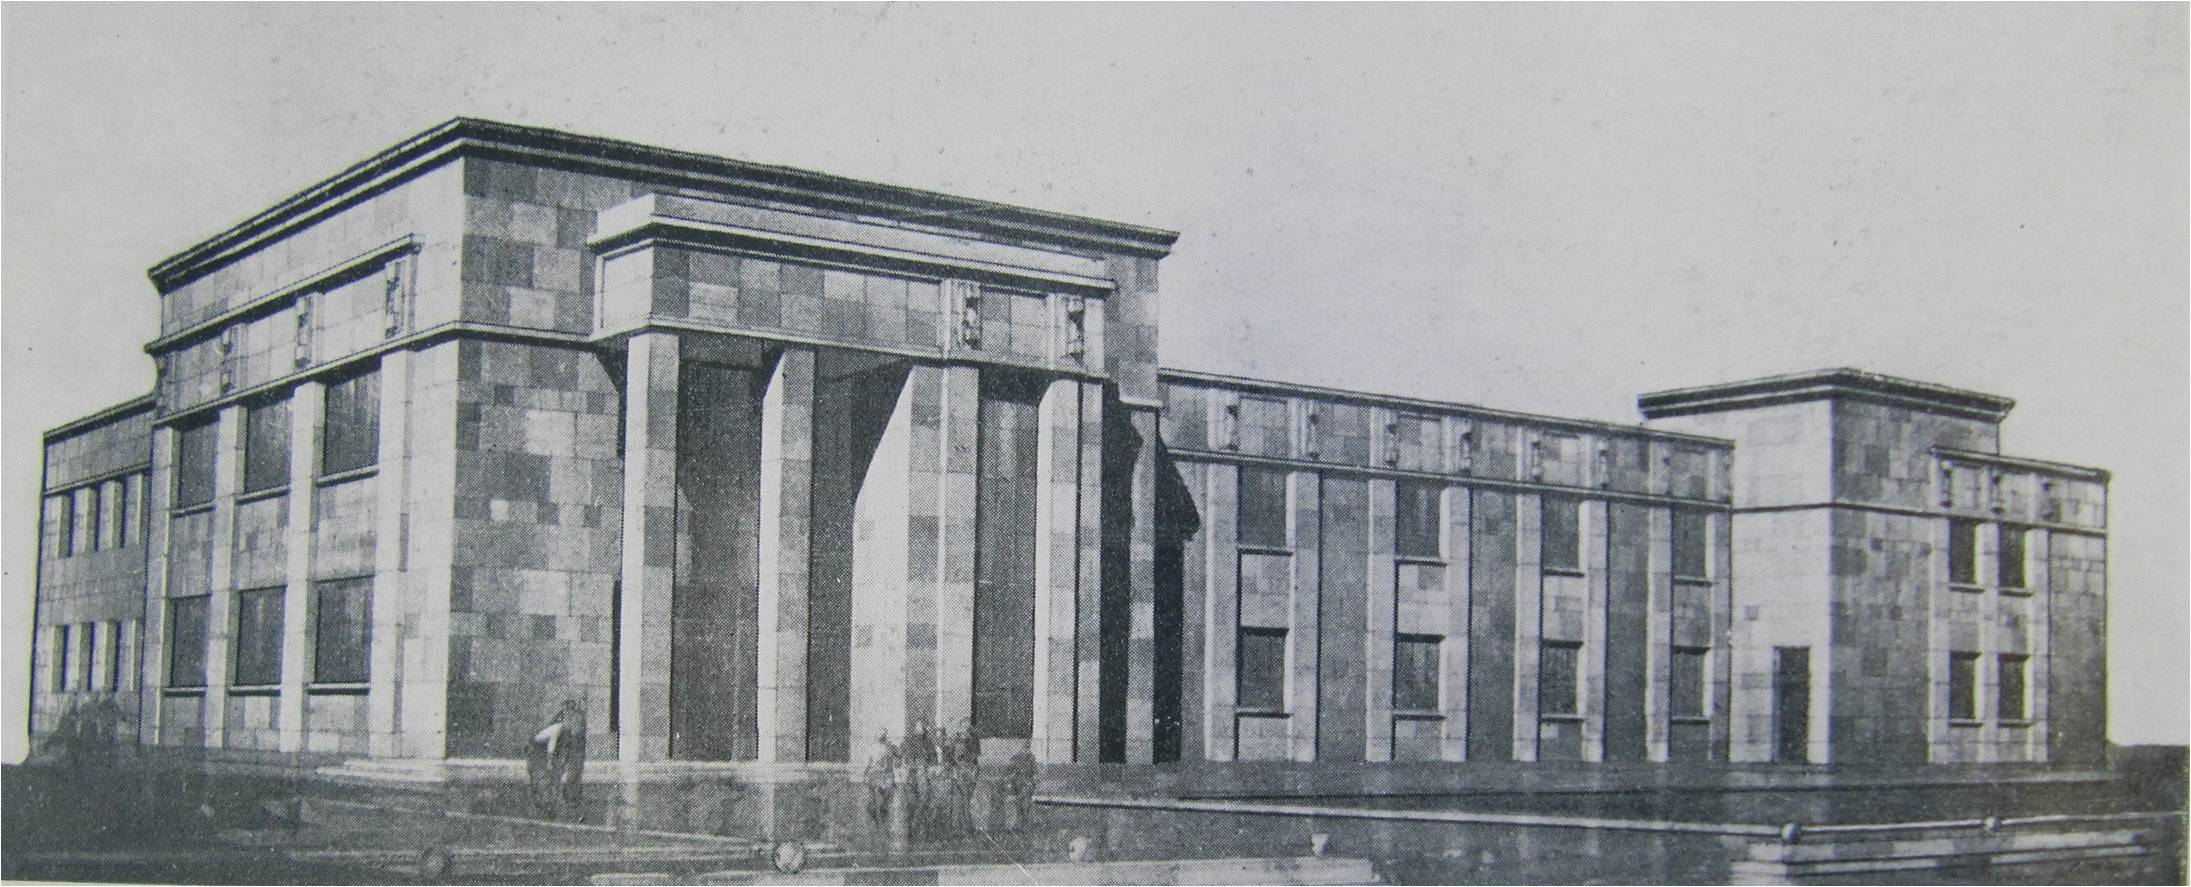 3.Благодатная ул., 45. 1934-1935 гг. Школа. Проект.